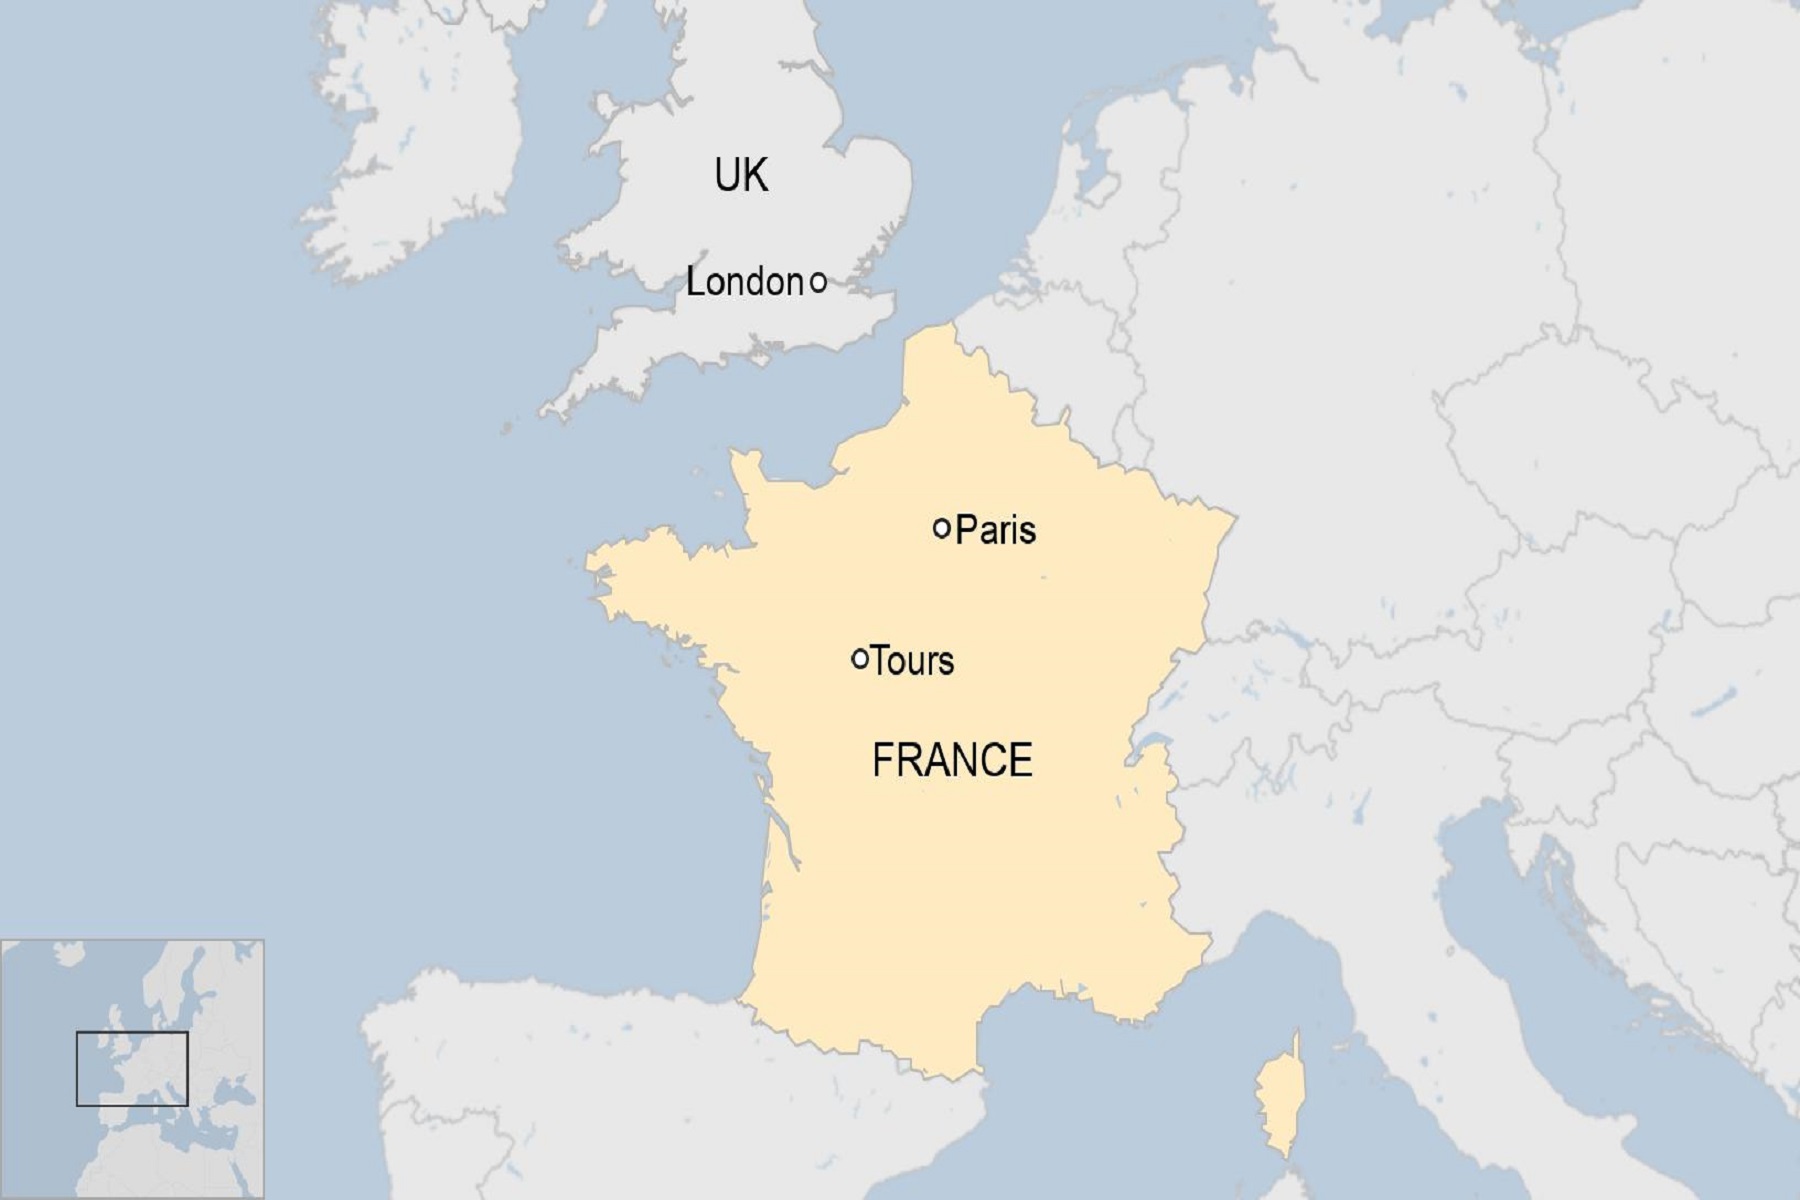 Πανδημία Γαλλία: Εντοπίστηκαν περίπου 20 κρούσματα ινδικής παραλλαγής κορωνοϊού